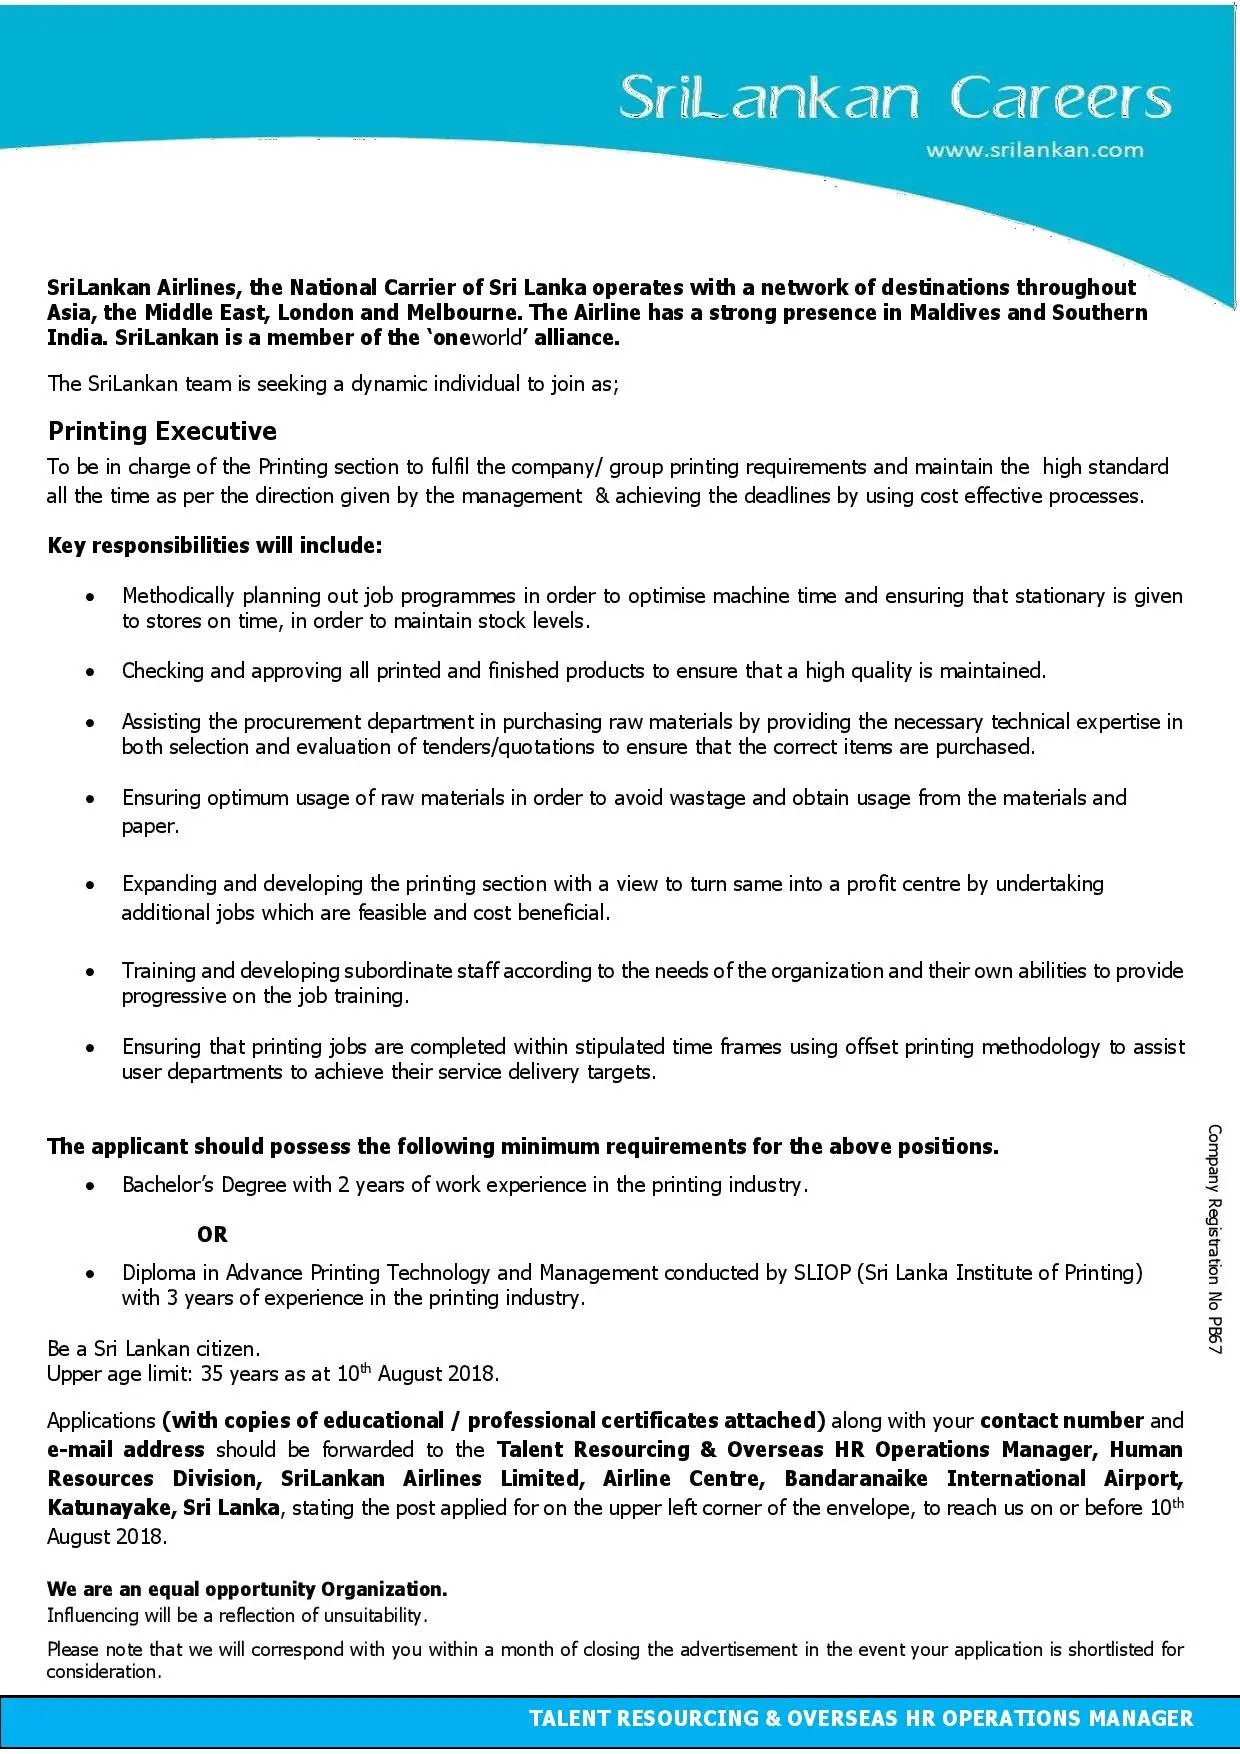 Printing Executive Jobs Vacancies - Sri Lanka Airlines Jobs Vacancies Details